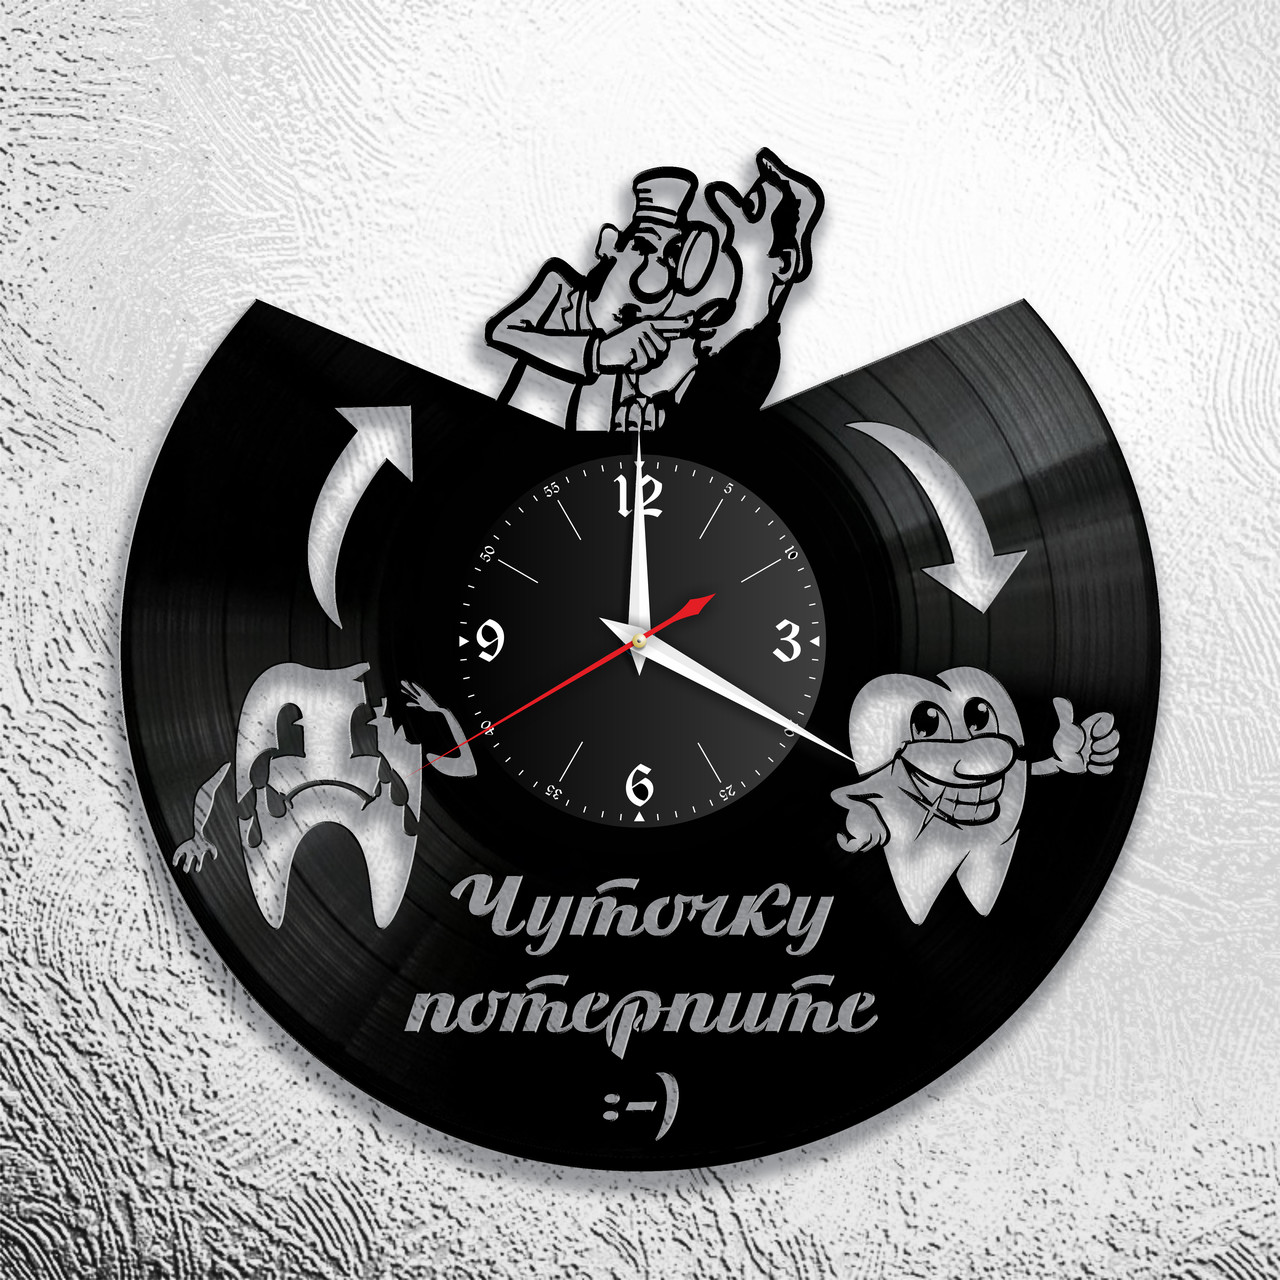 Оригинальные часы из виниловых пластинок "Стоматолог" Версия 1